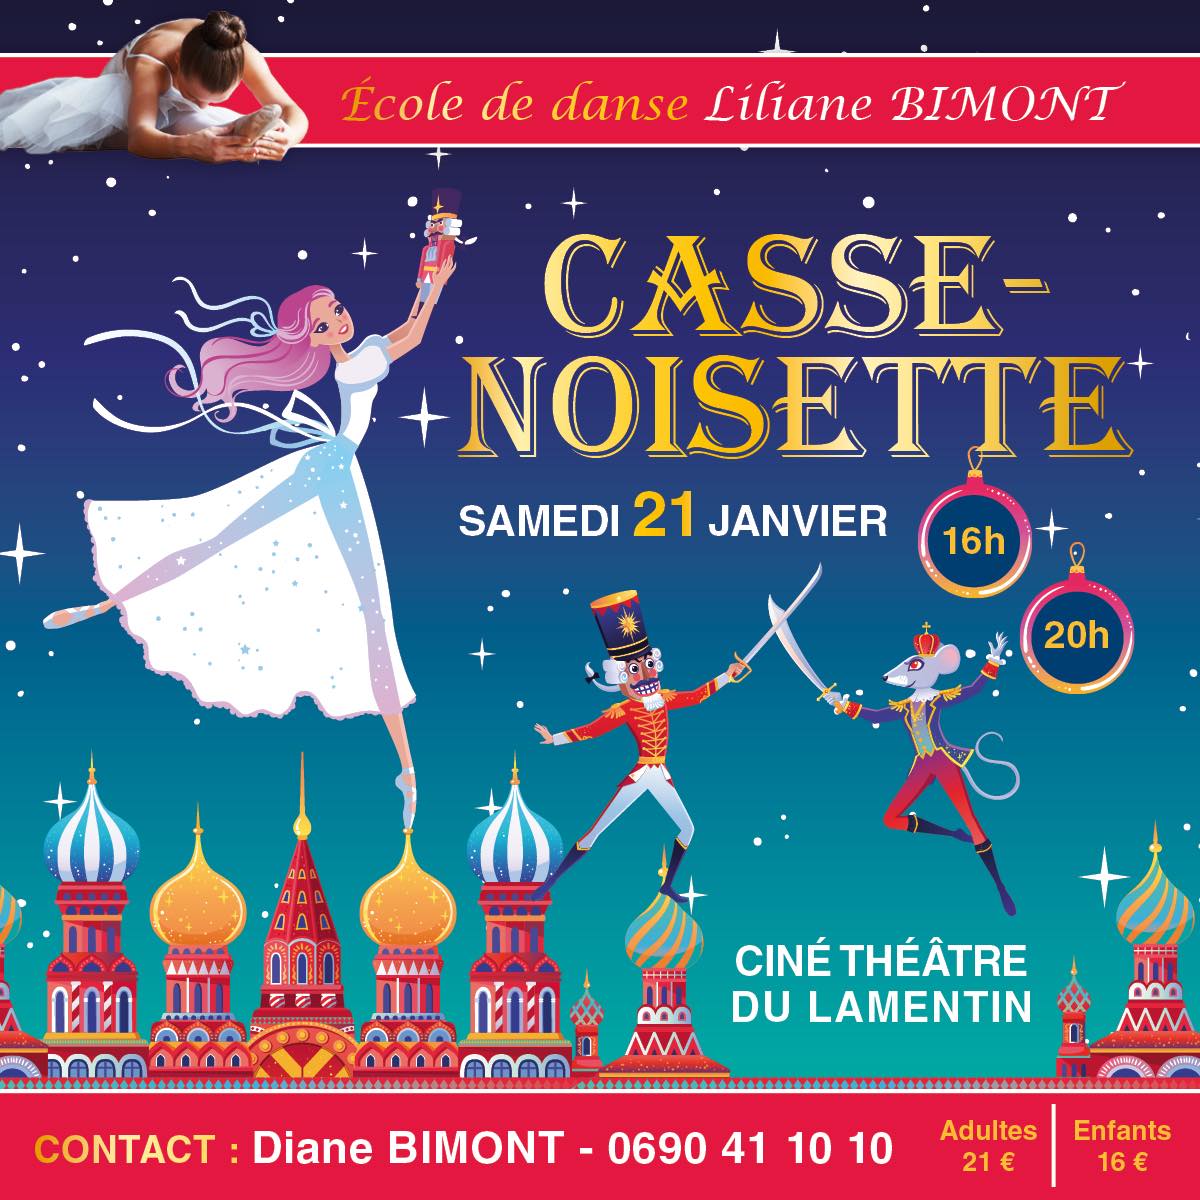 Spectacle de Danse le Samedi 21 Janvier au ciné théâtre du Lamentin.